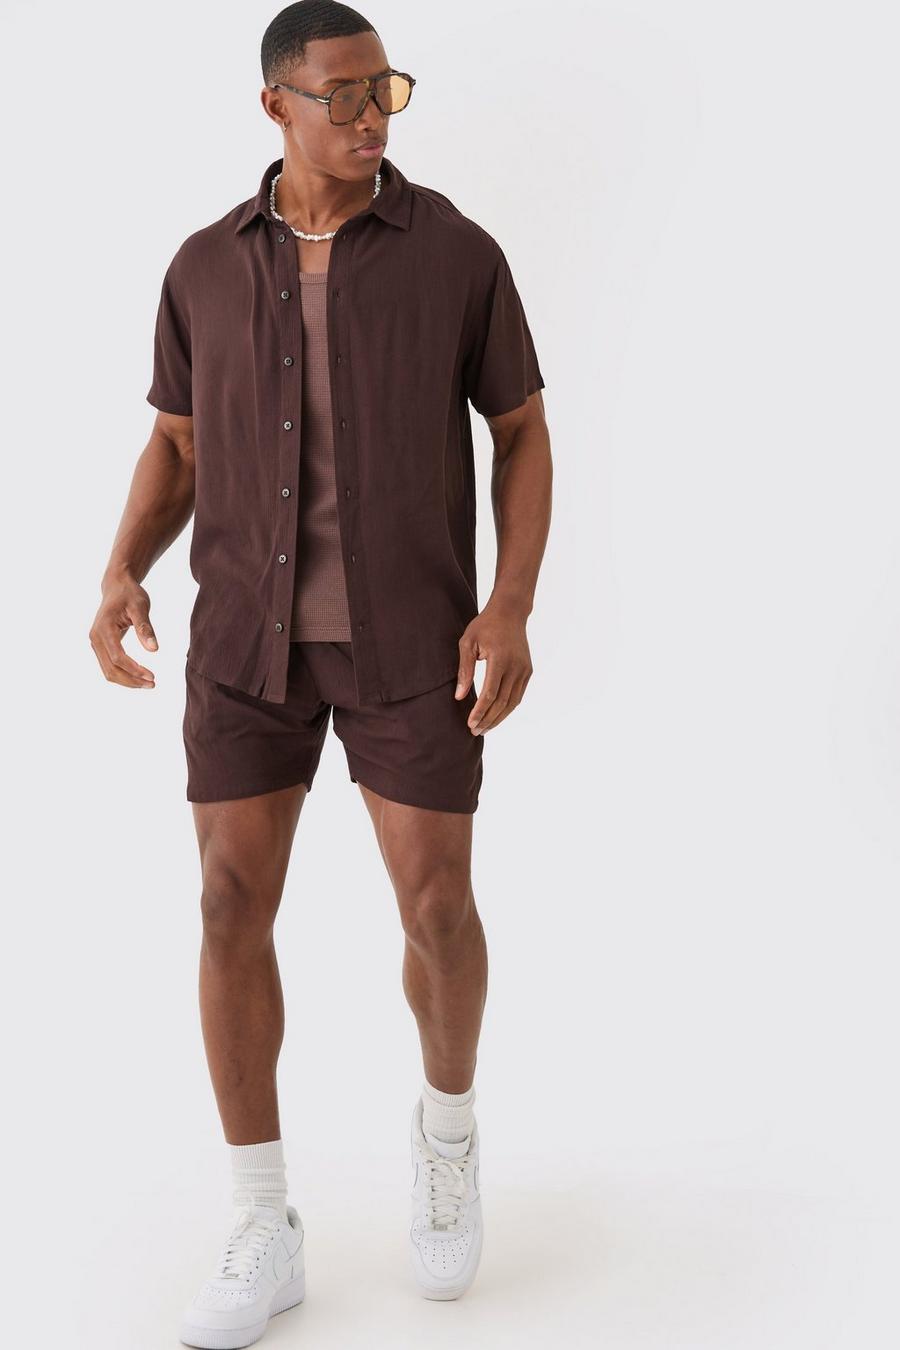 Conjunto de pantalón corto y camisa de manga corta de estopilla, Brown